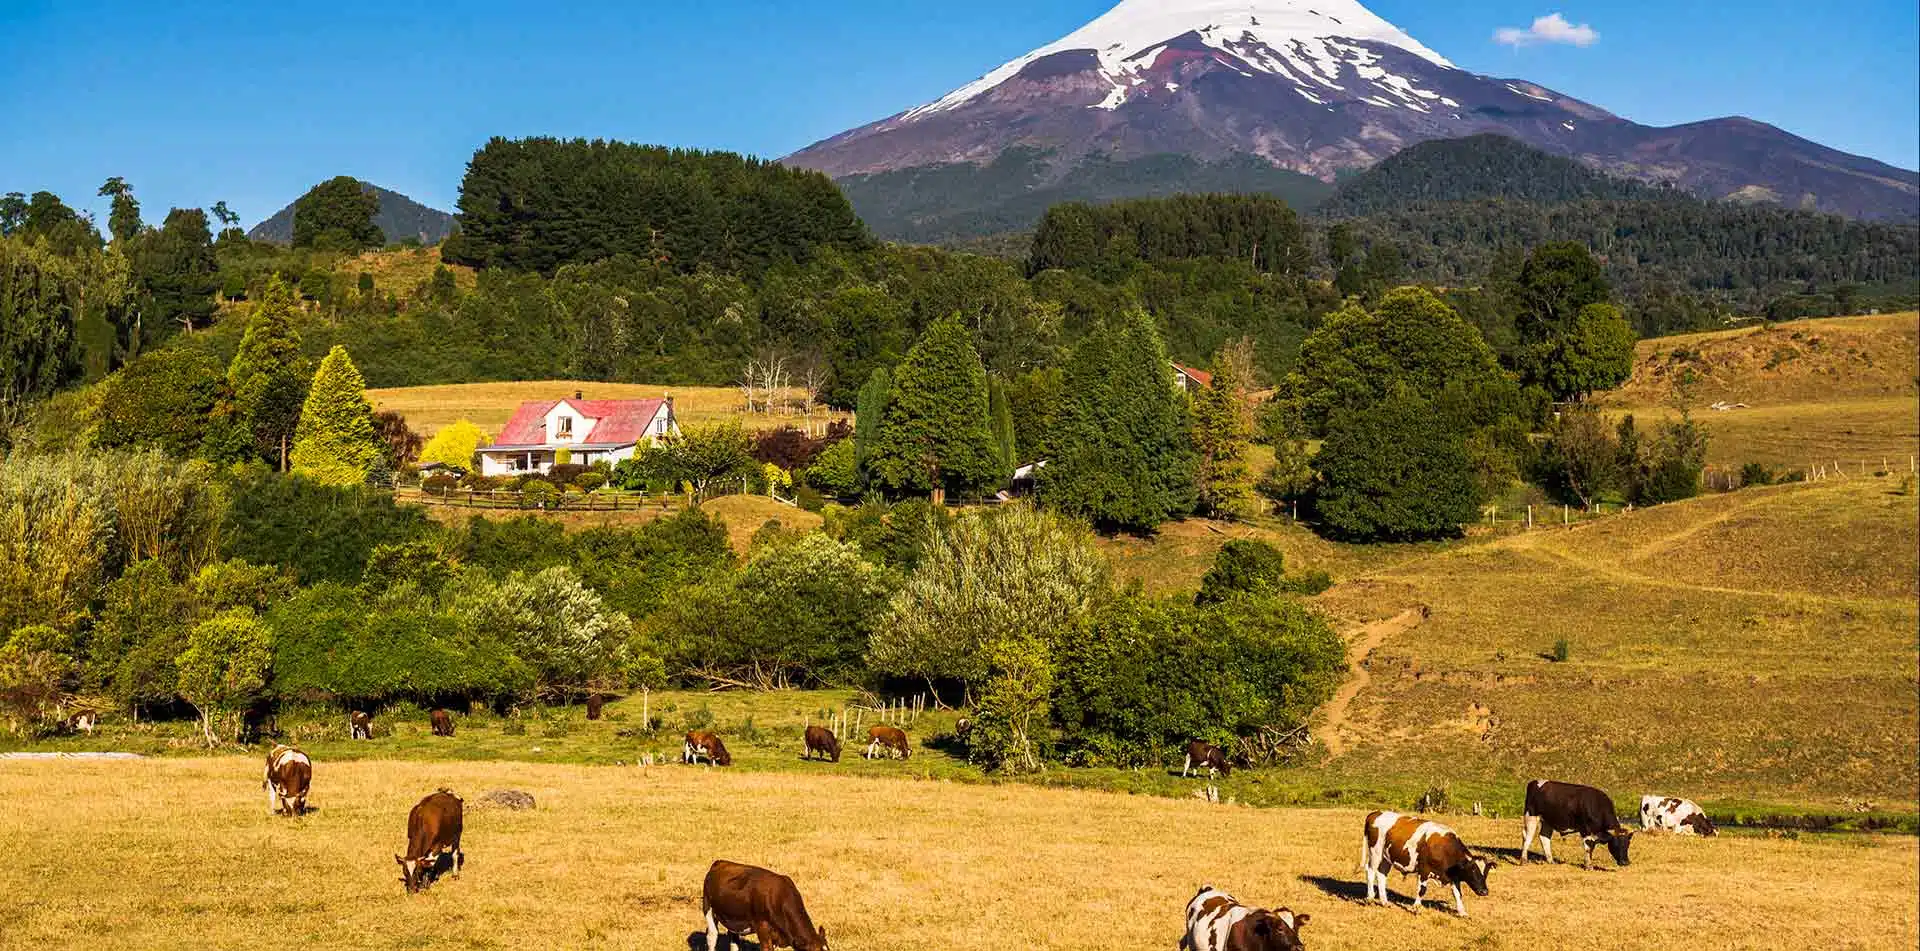 Osorno Volcano and farm land